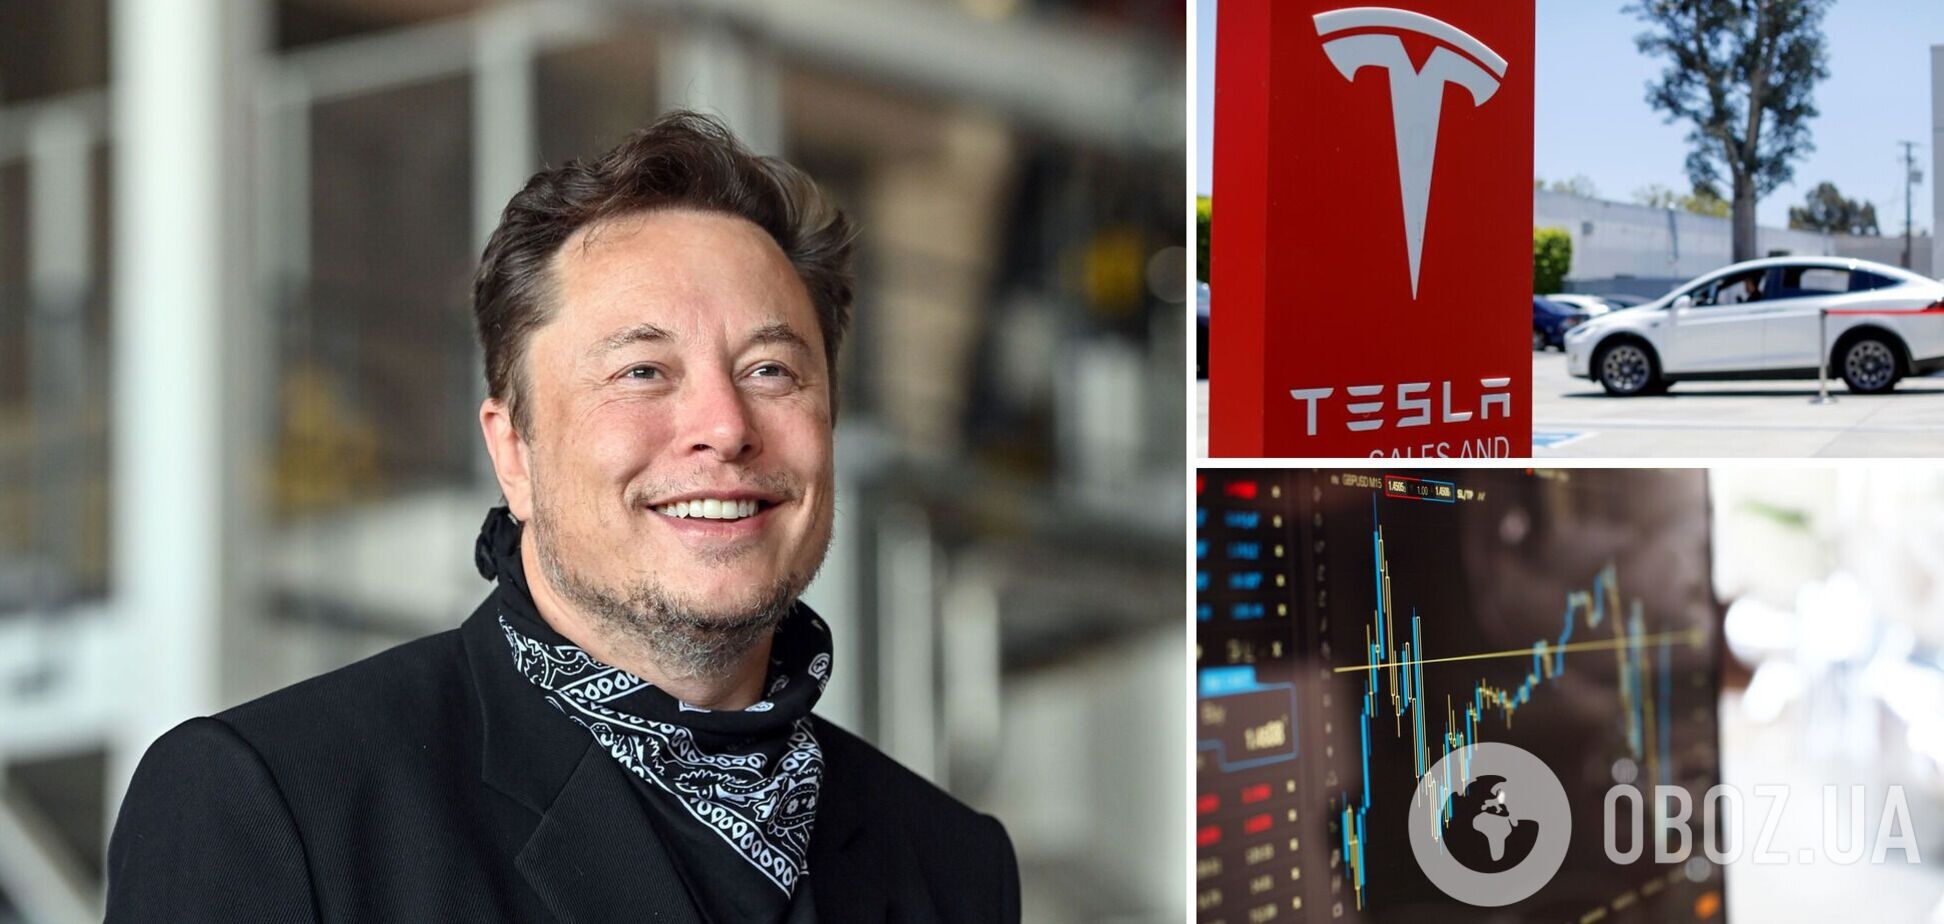 Маск разбогател на Tesla, несмотря на продажу части акций